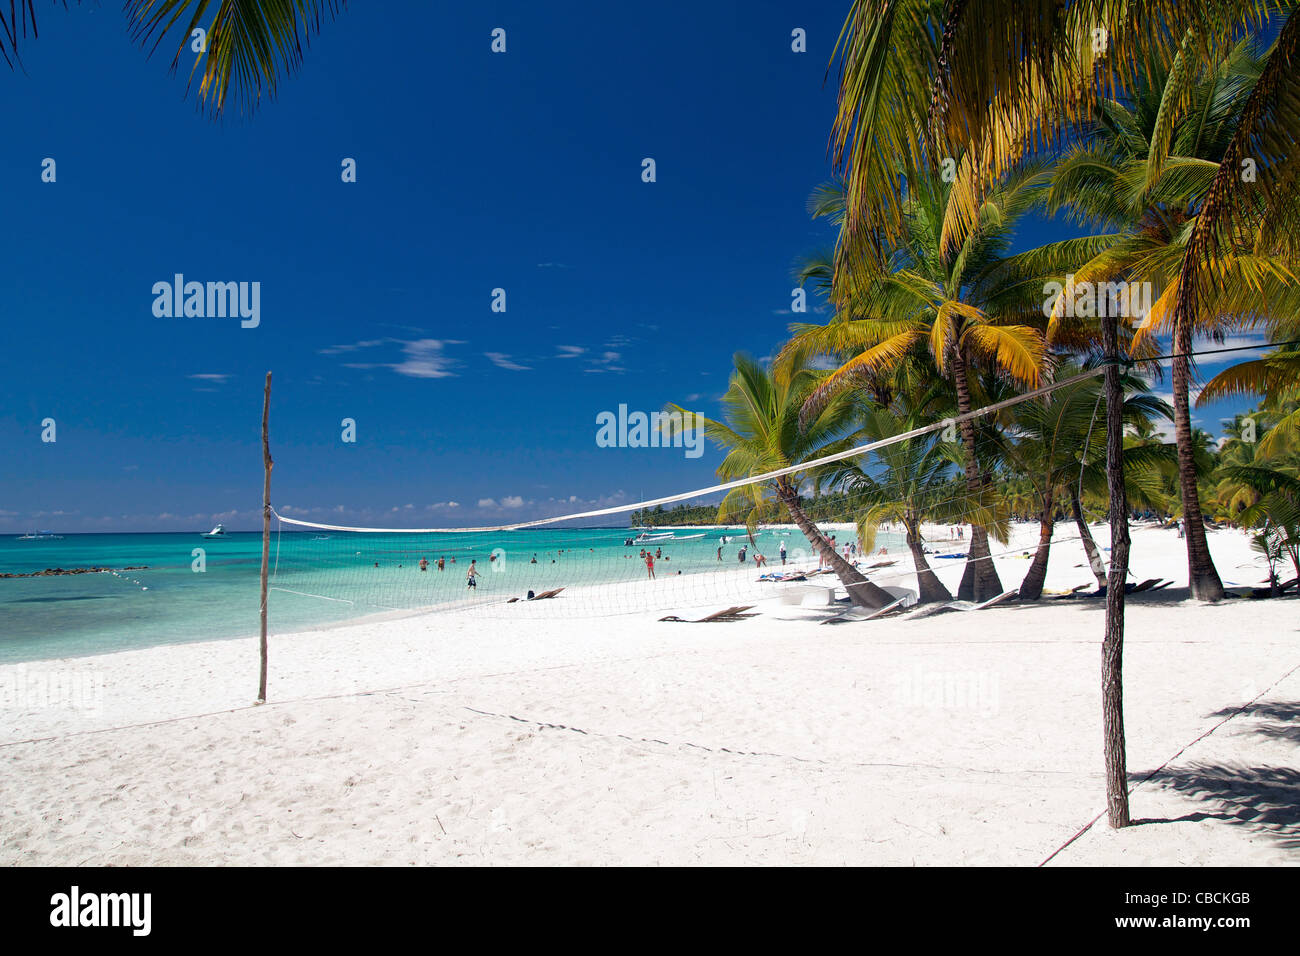 Filet de volley-ball sur la plage tropicale, mer des Caraïbes Banque D'Images